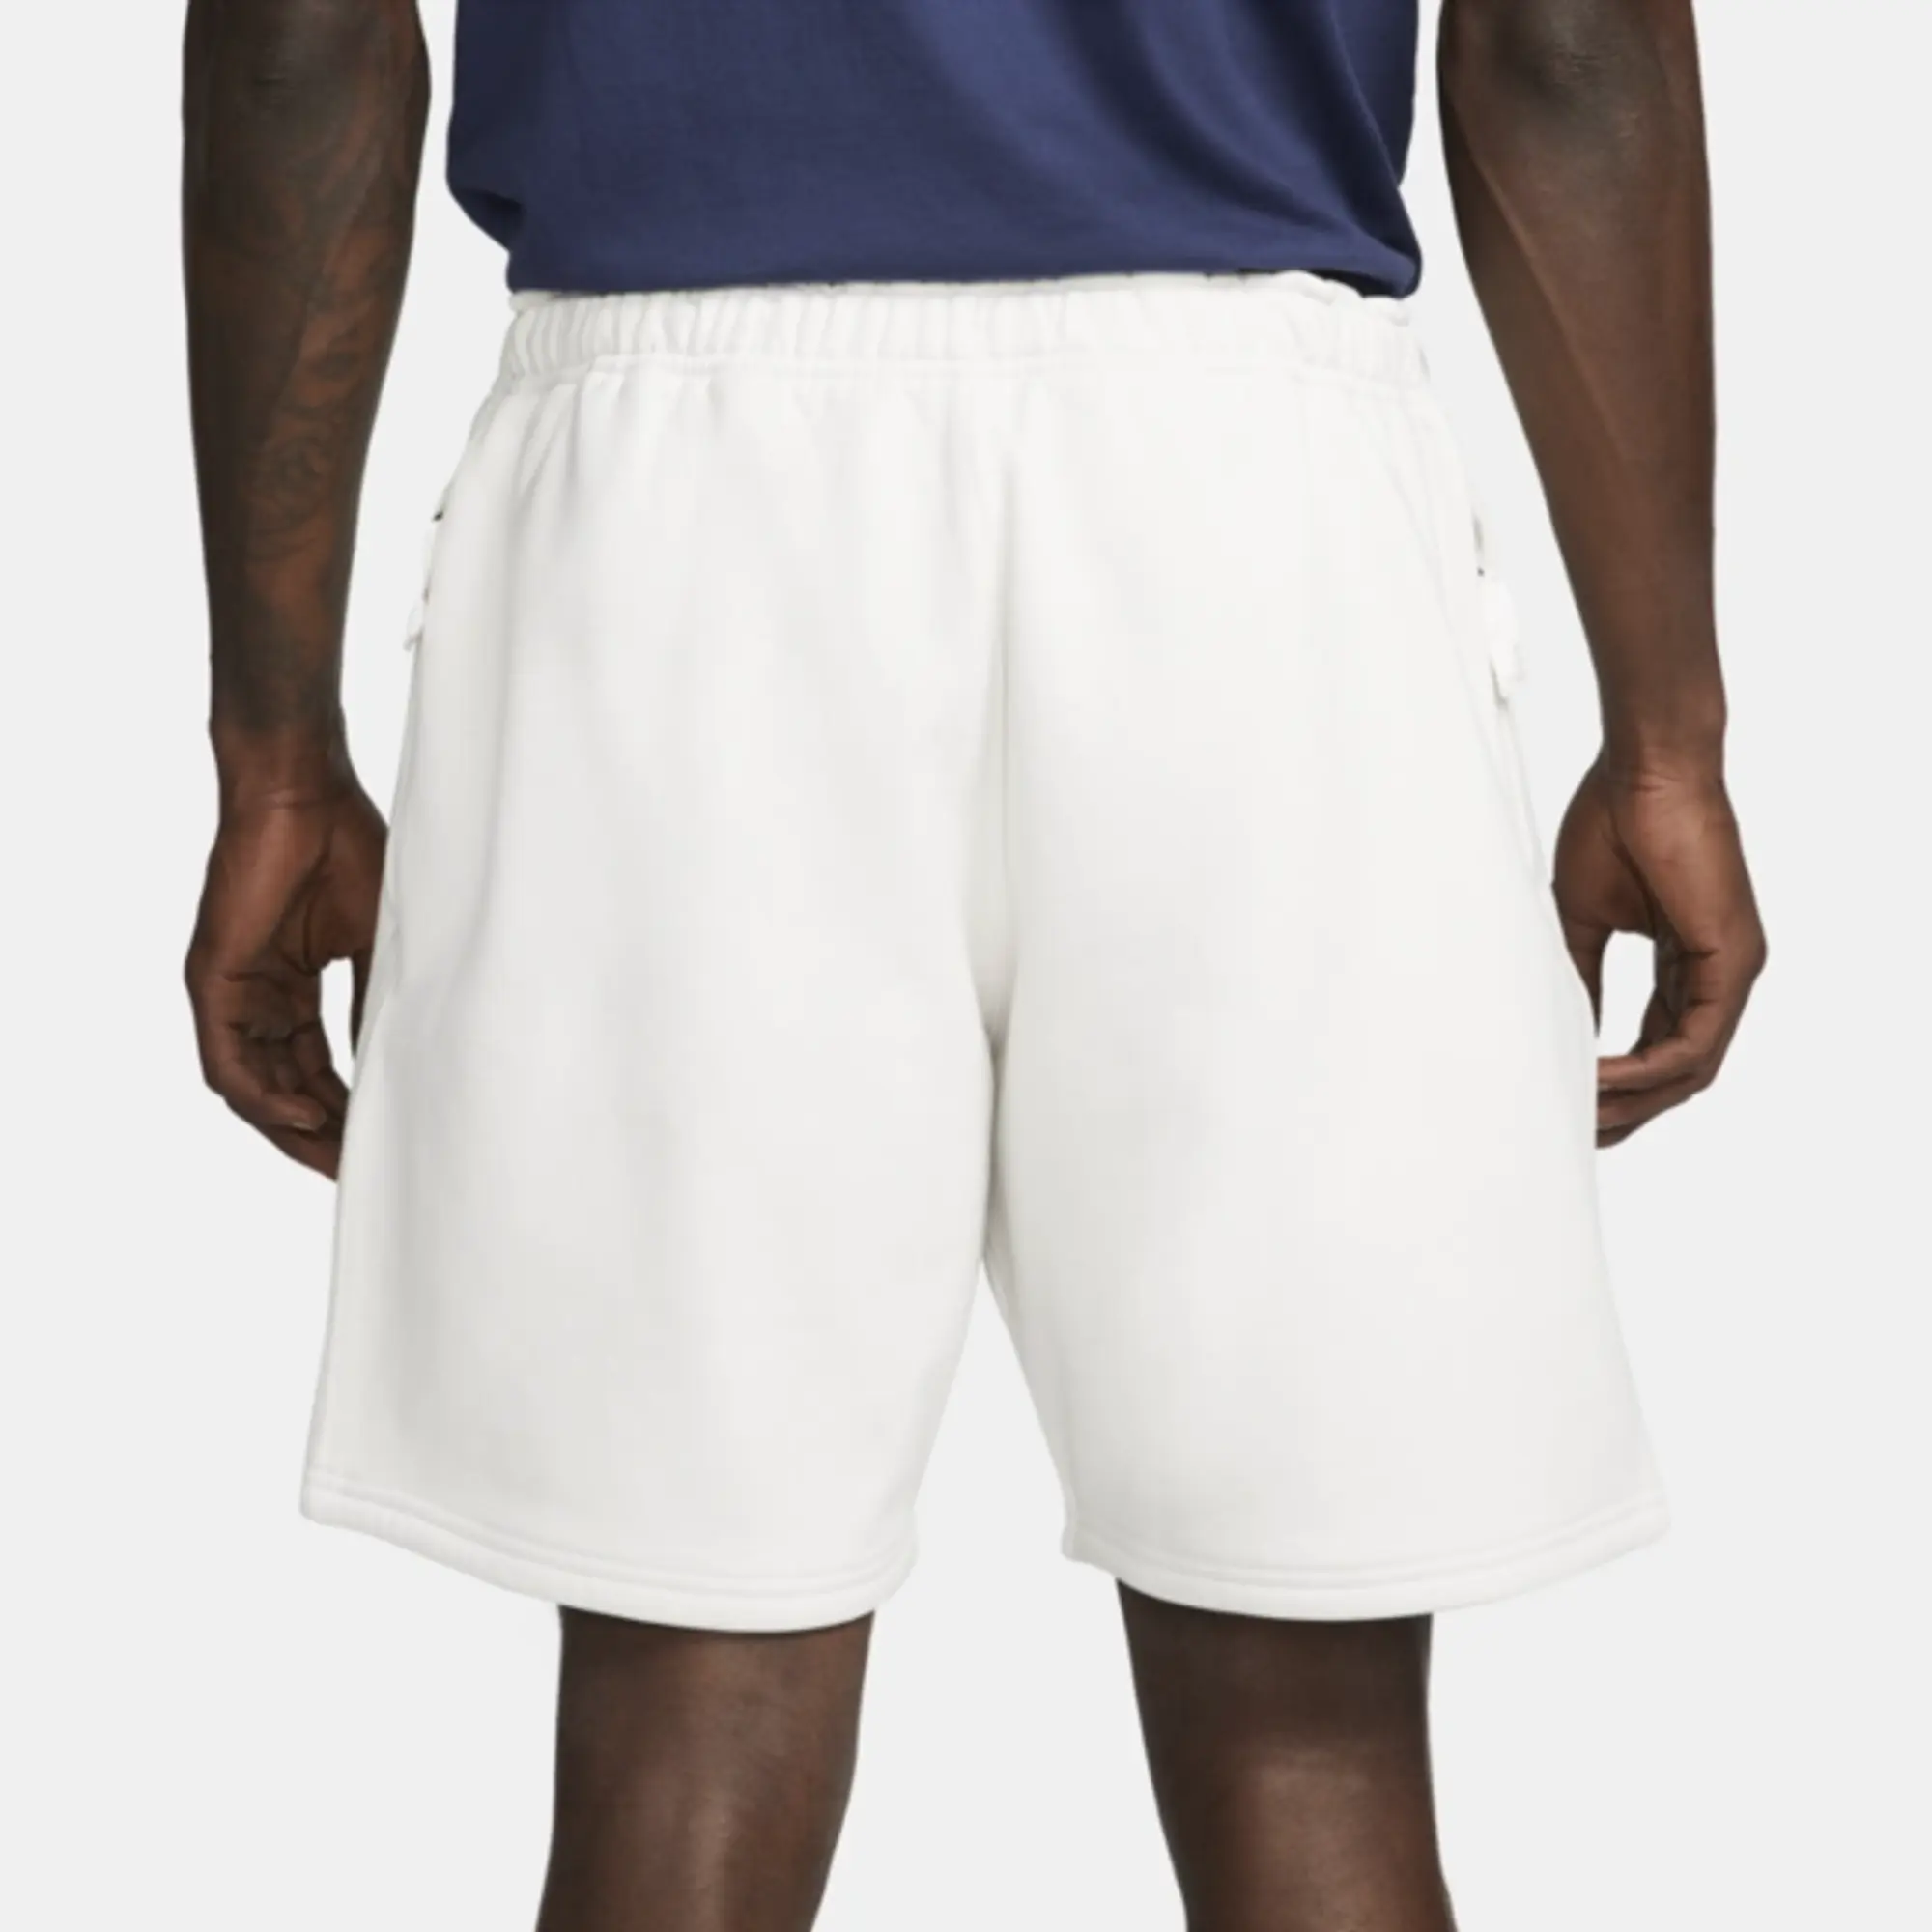 Nike Solo Swoosh Fleece Shorts - Grey